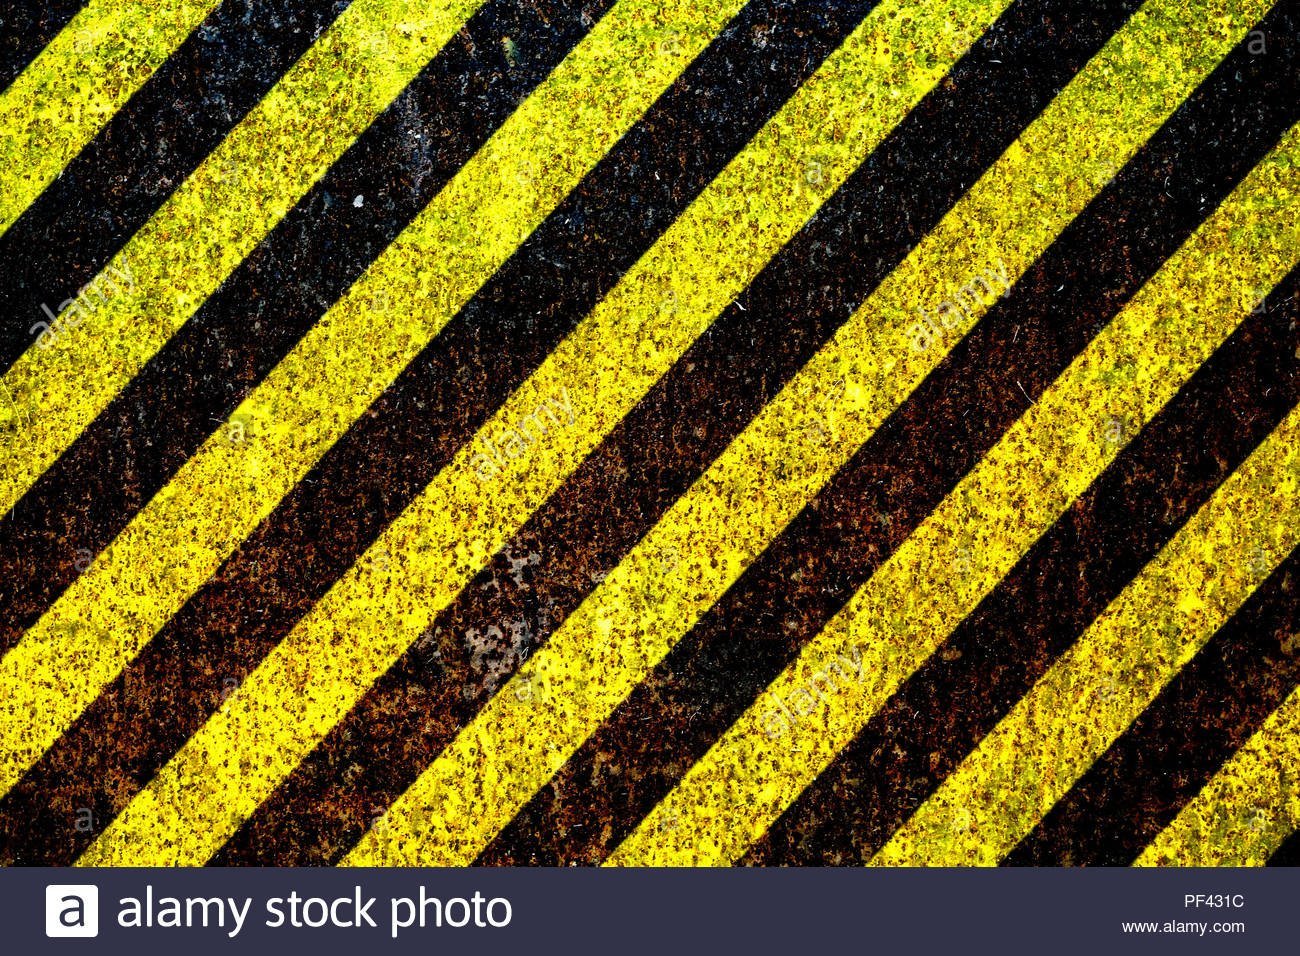 Желто черная предупредительная табличка фон